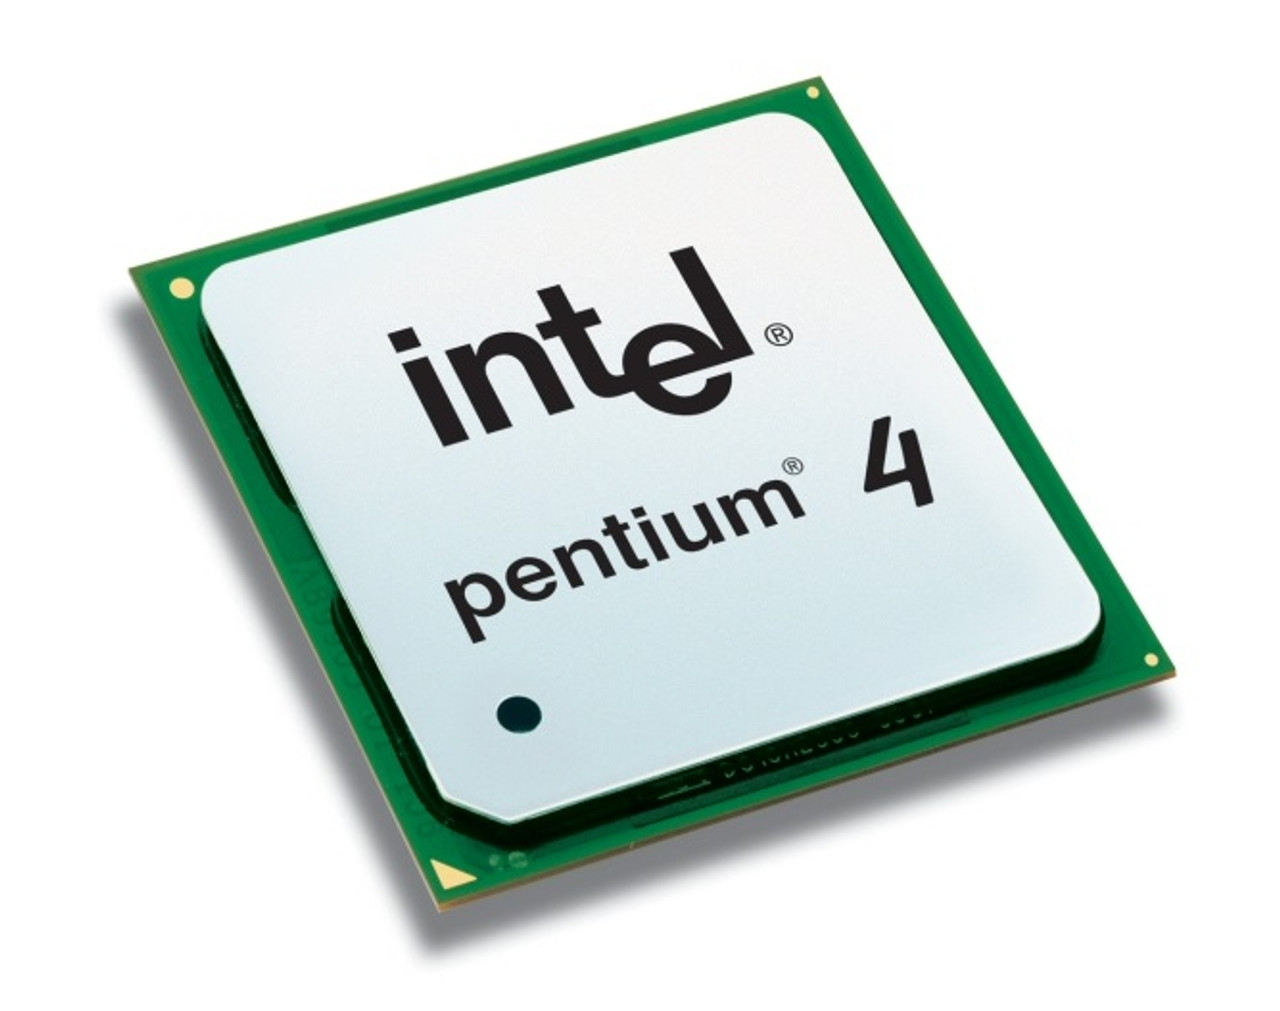 BX80547PG3200EJ - Intel Pentium 4 540J 3.20GHz 800MHz FSB 1MB L2 Cache Socket 775 Processor